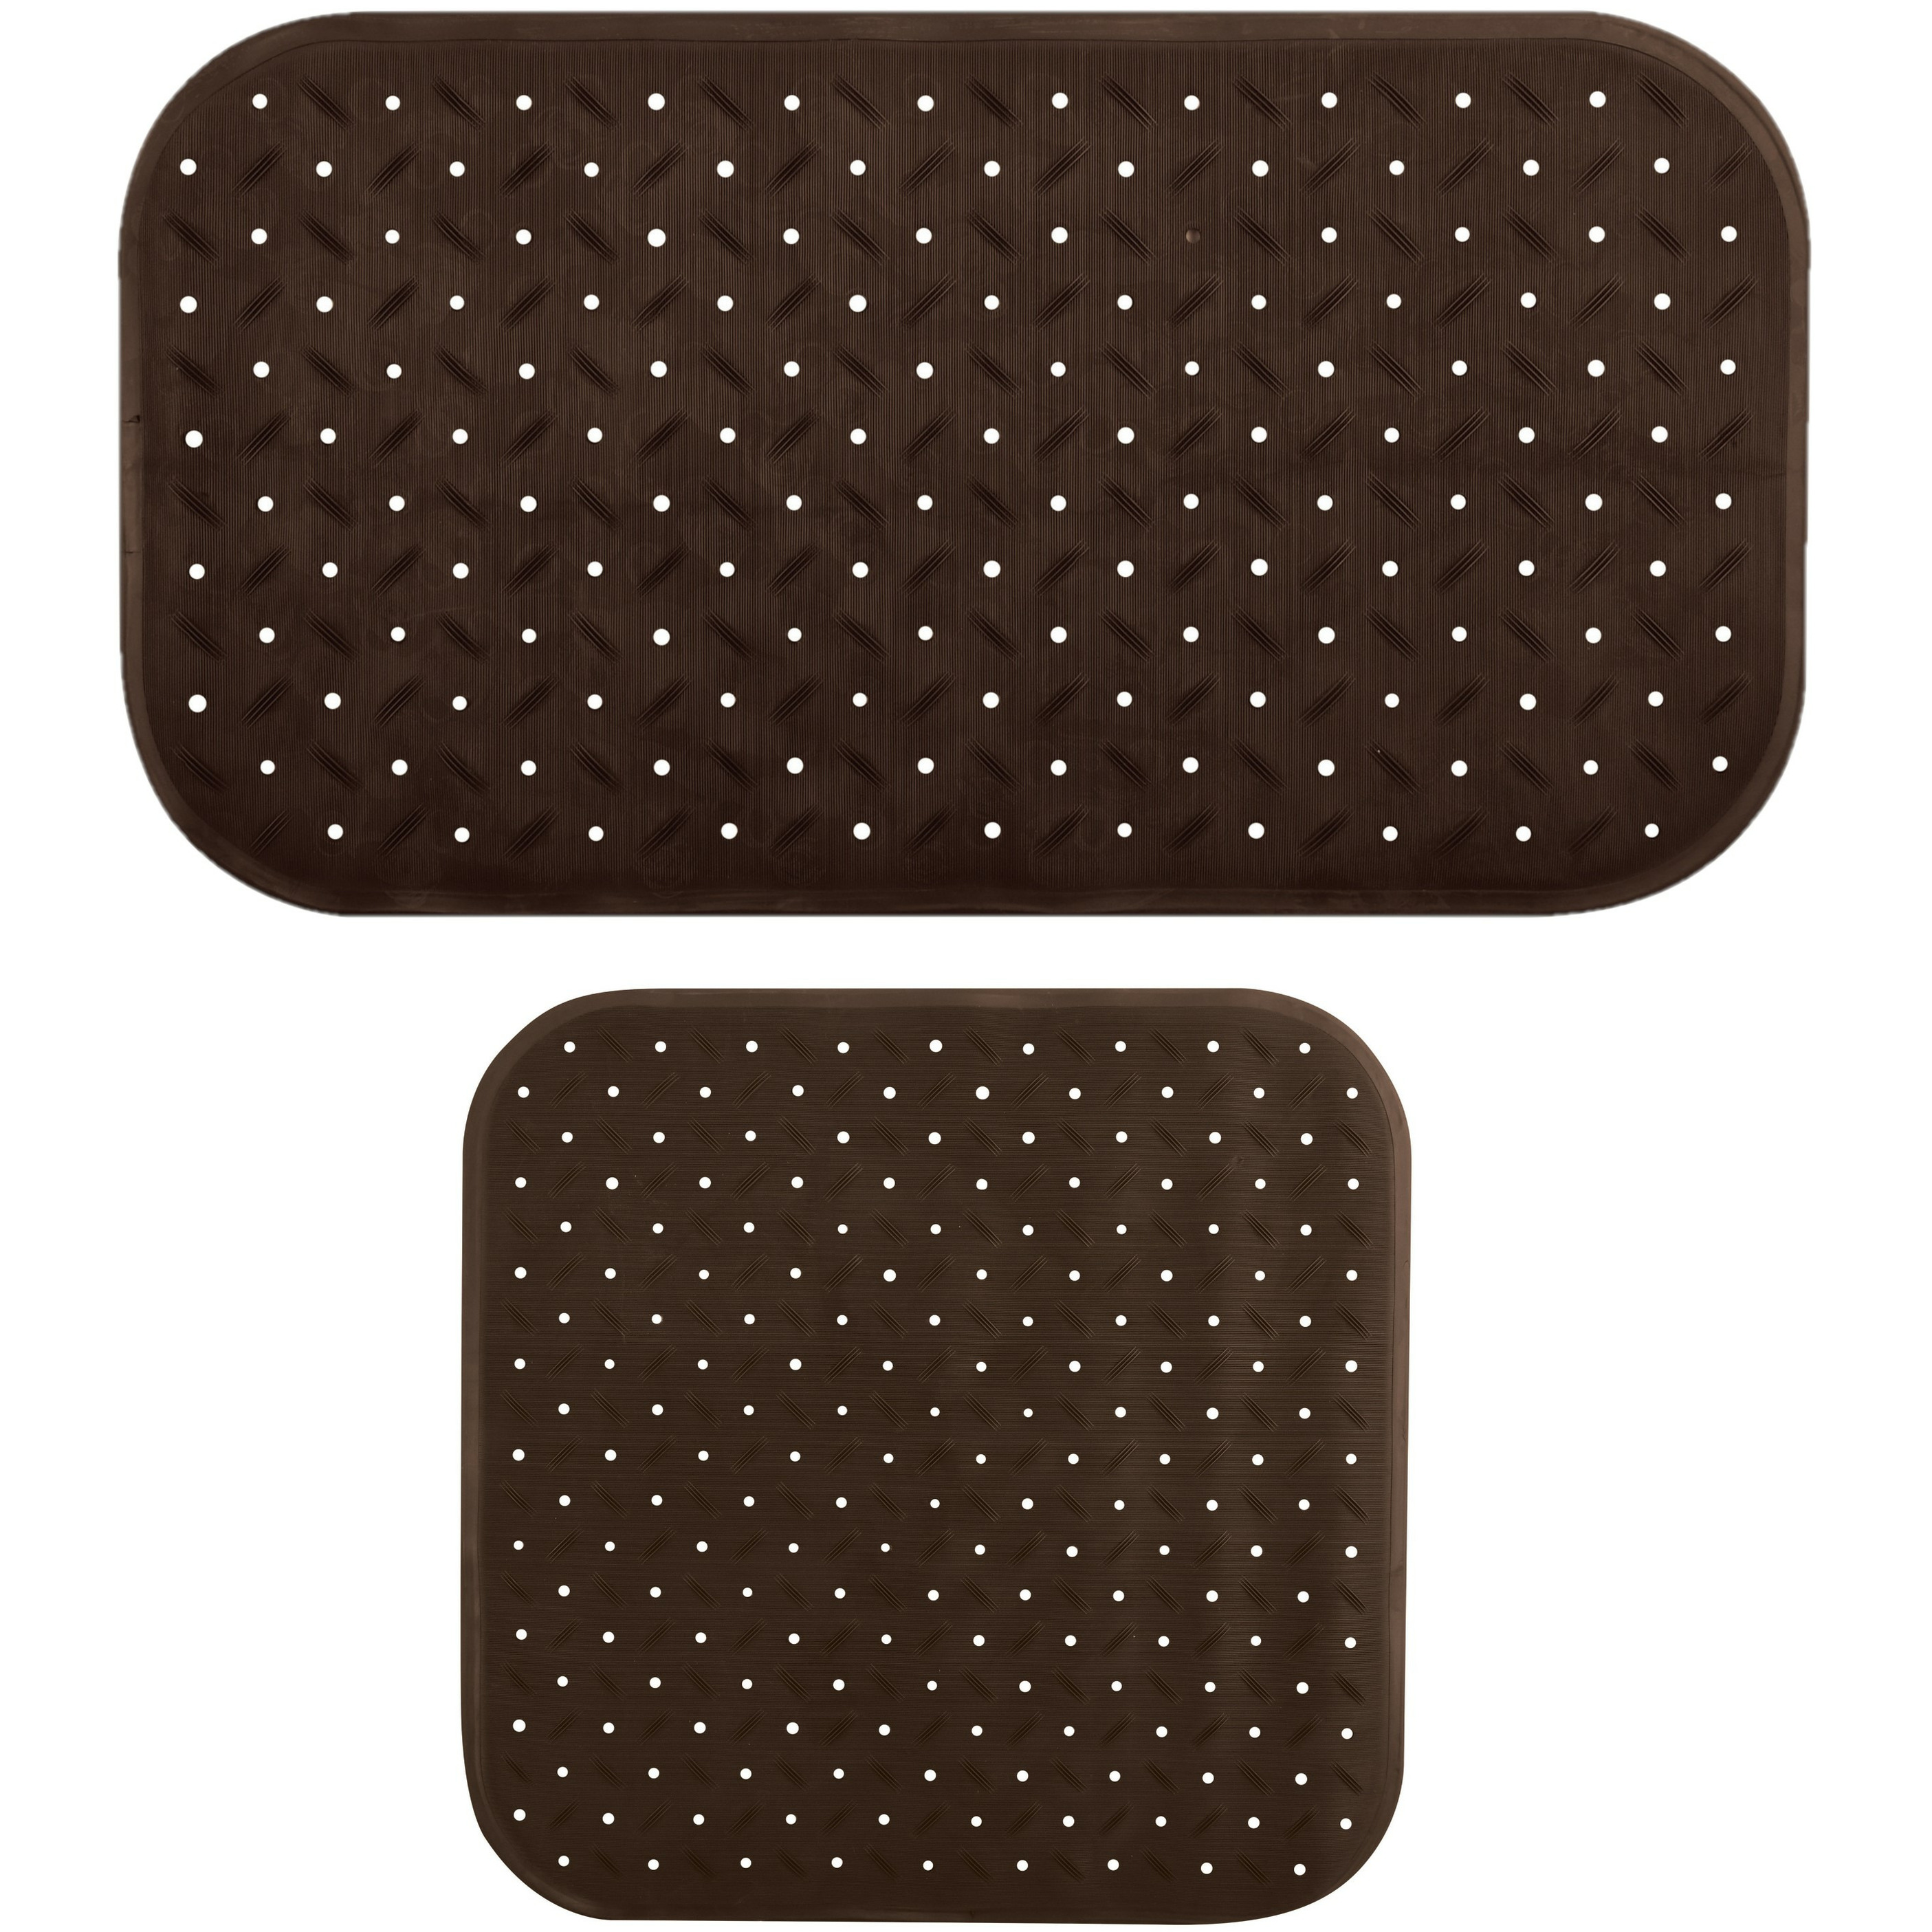 MSV Douche-bad anti-slip matten set badkamer rubber 2x stuks bruin 2 formaten